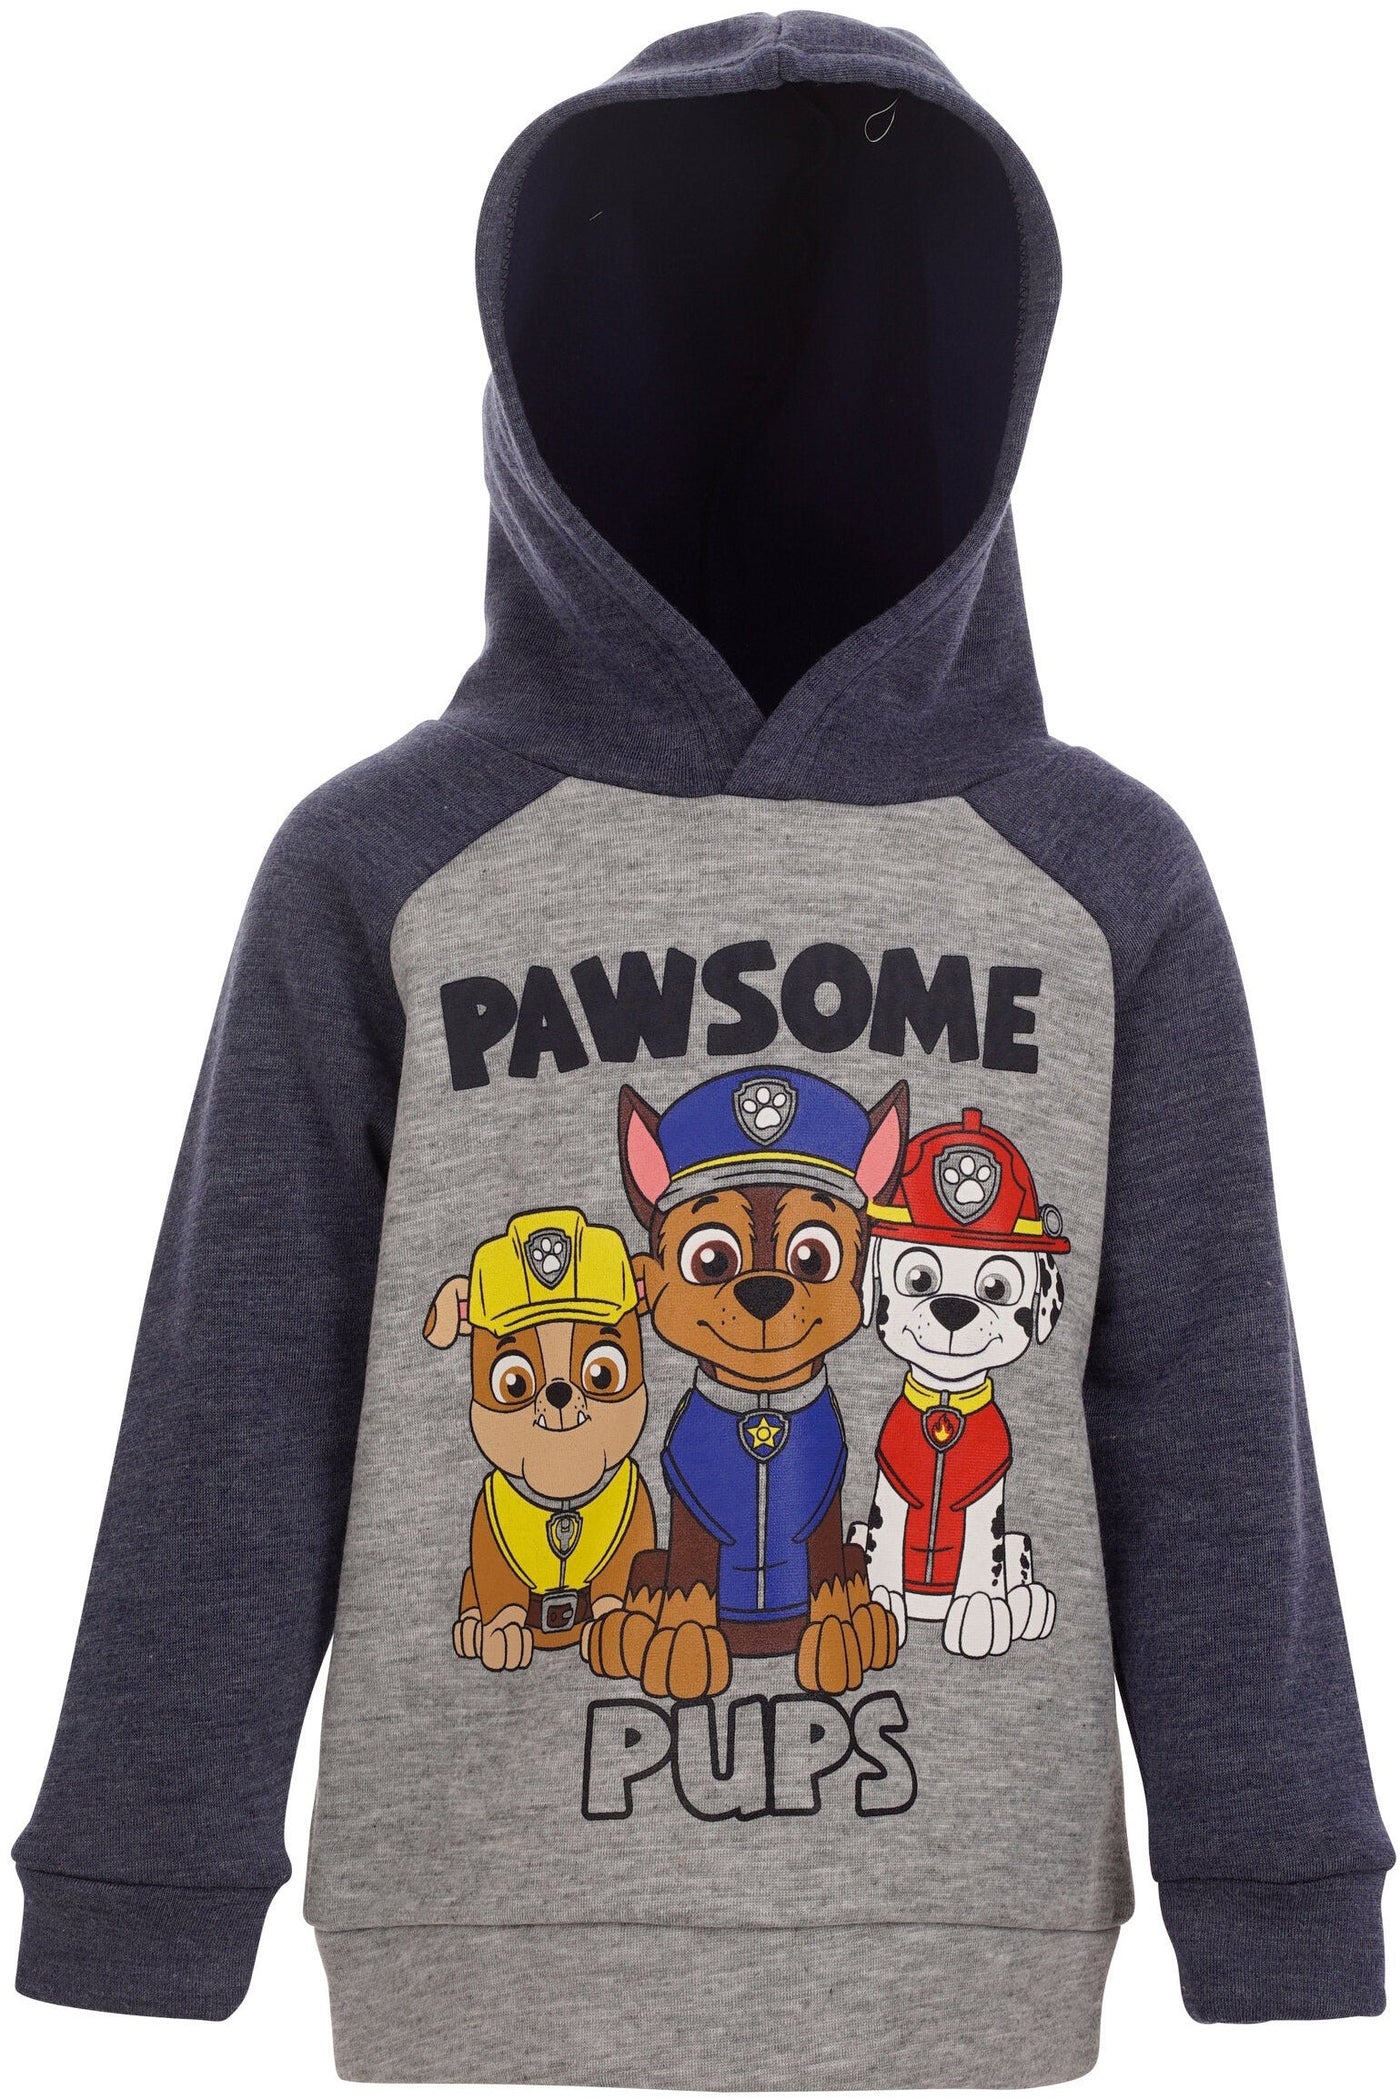 Es ist sicher ausverkauft! Paw Patrol Fleece Pullover Hoodie and imagikids Baby Clothing Kids 